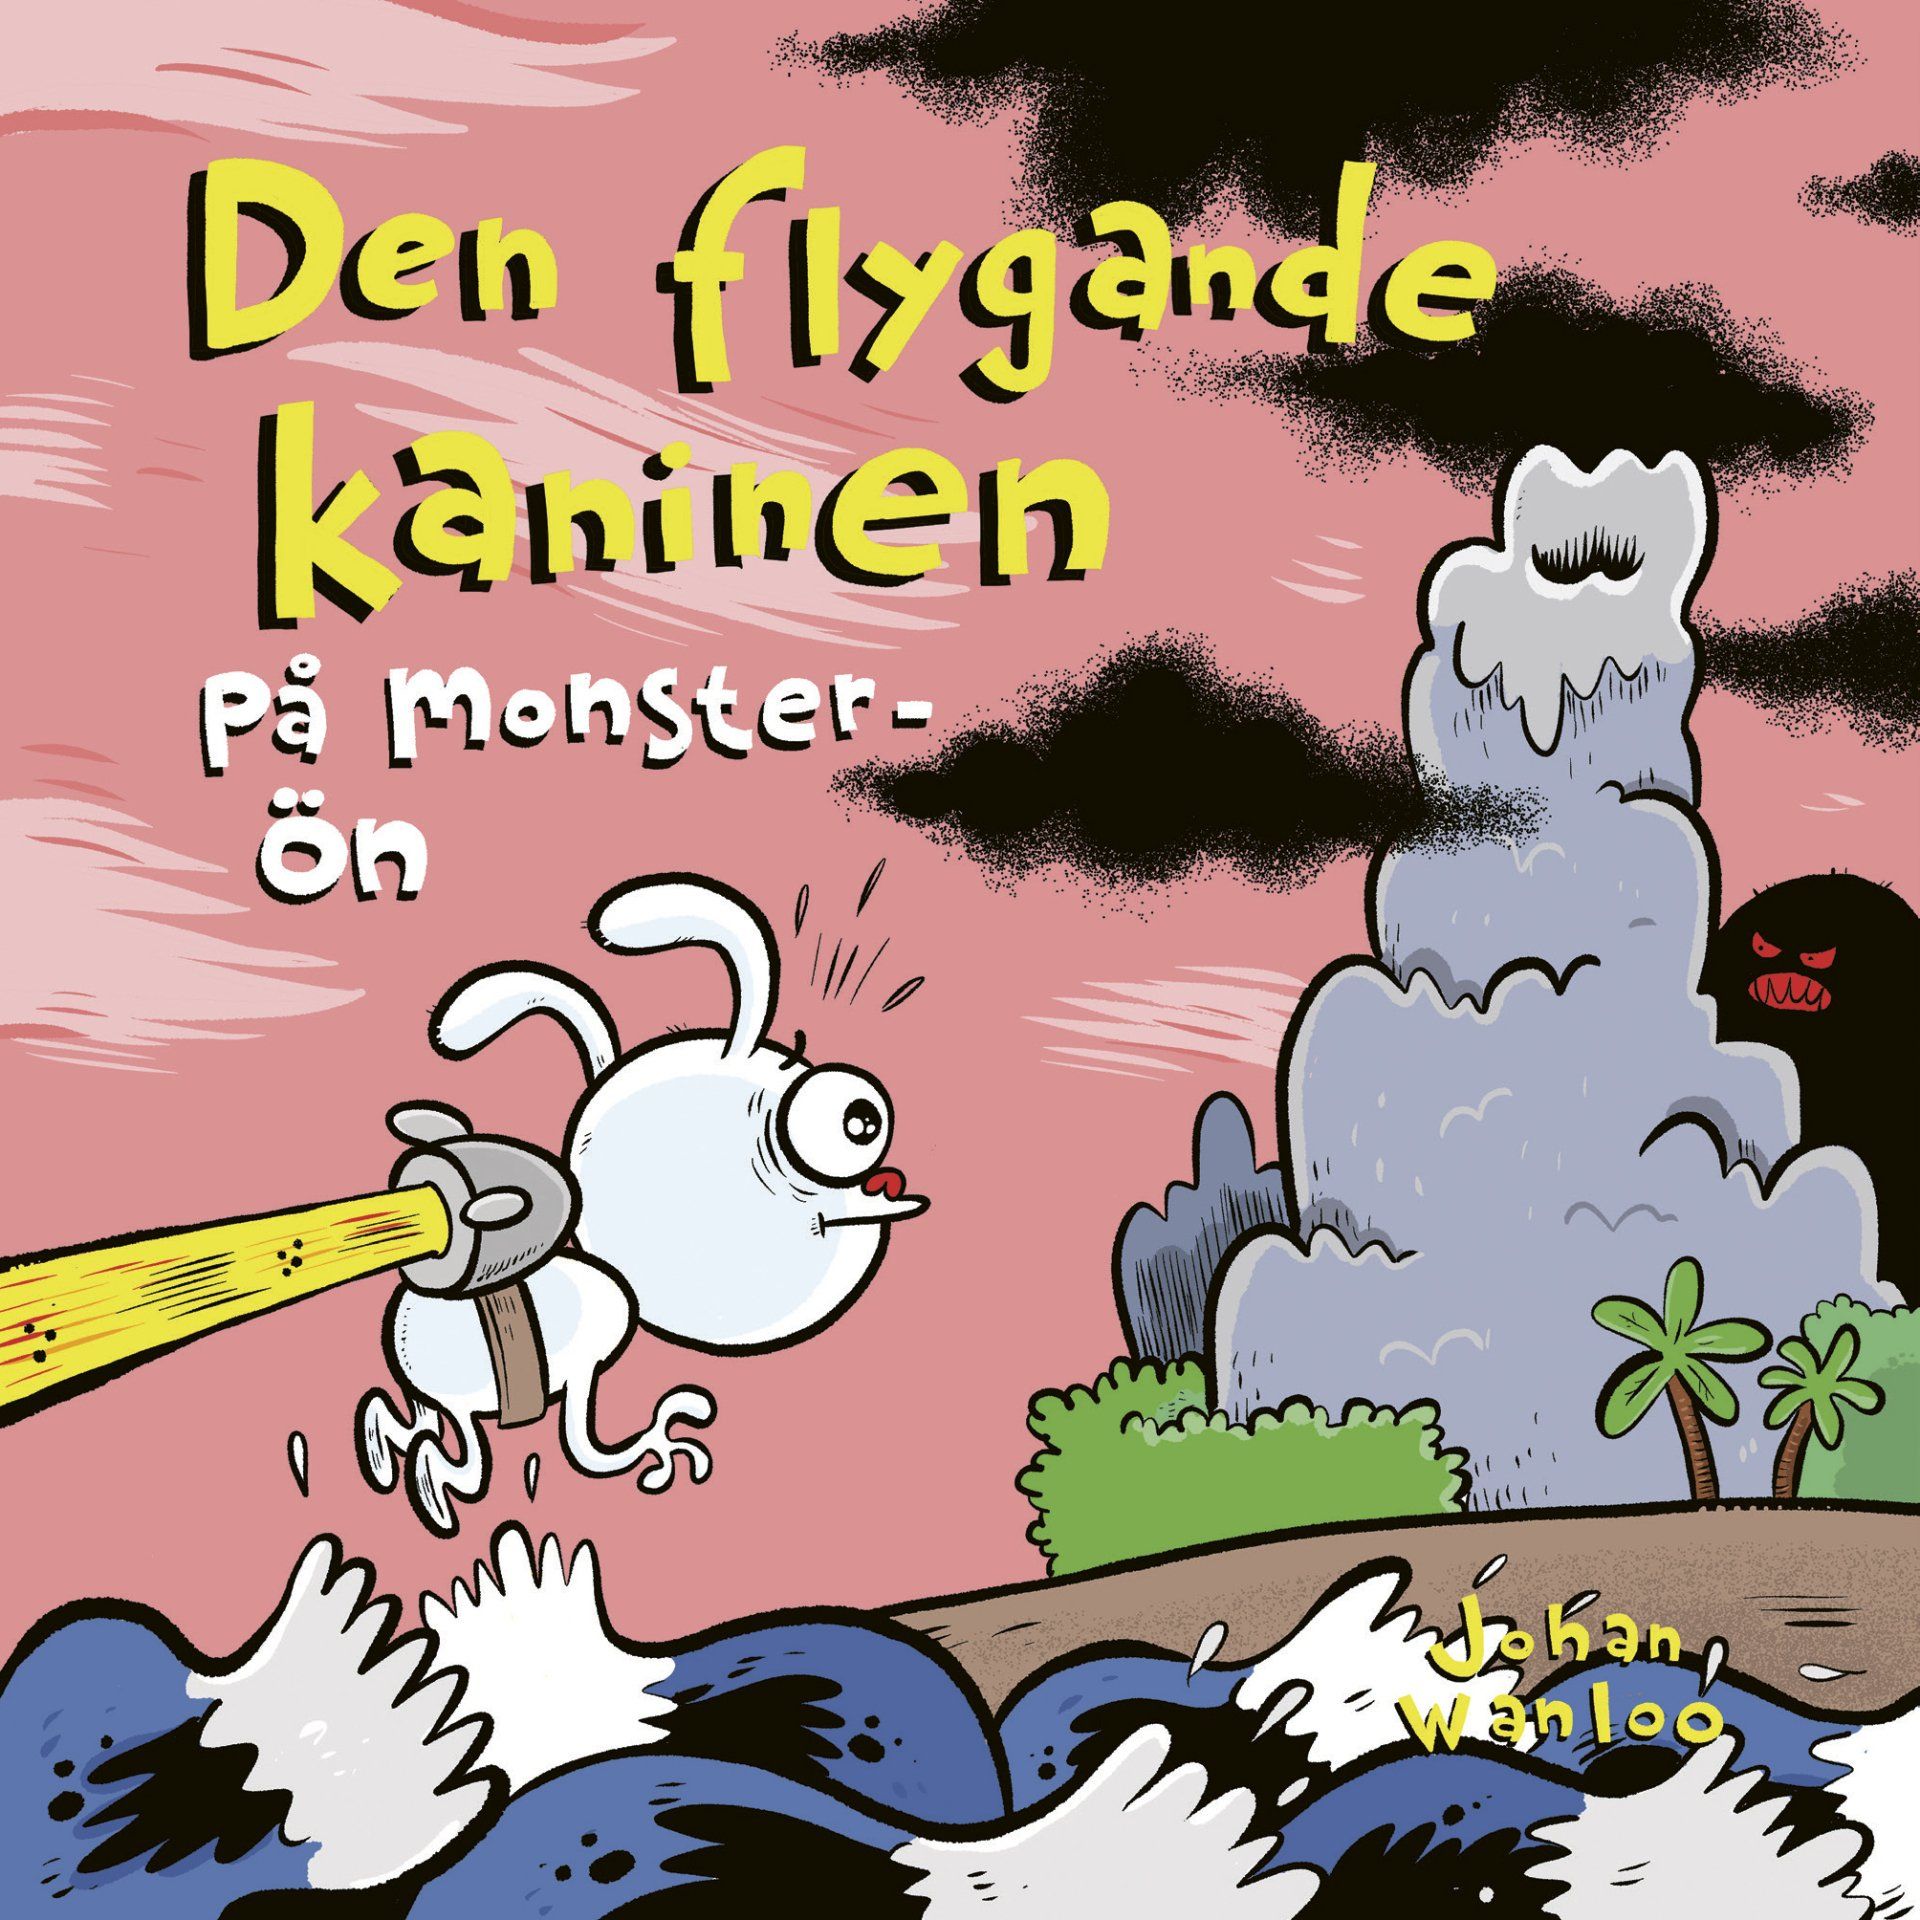 Boken Den flygande kaninen på monster-ön är skriven av Johan Wanloo på Stevali Bokförlag.